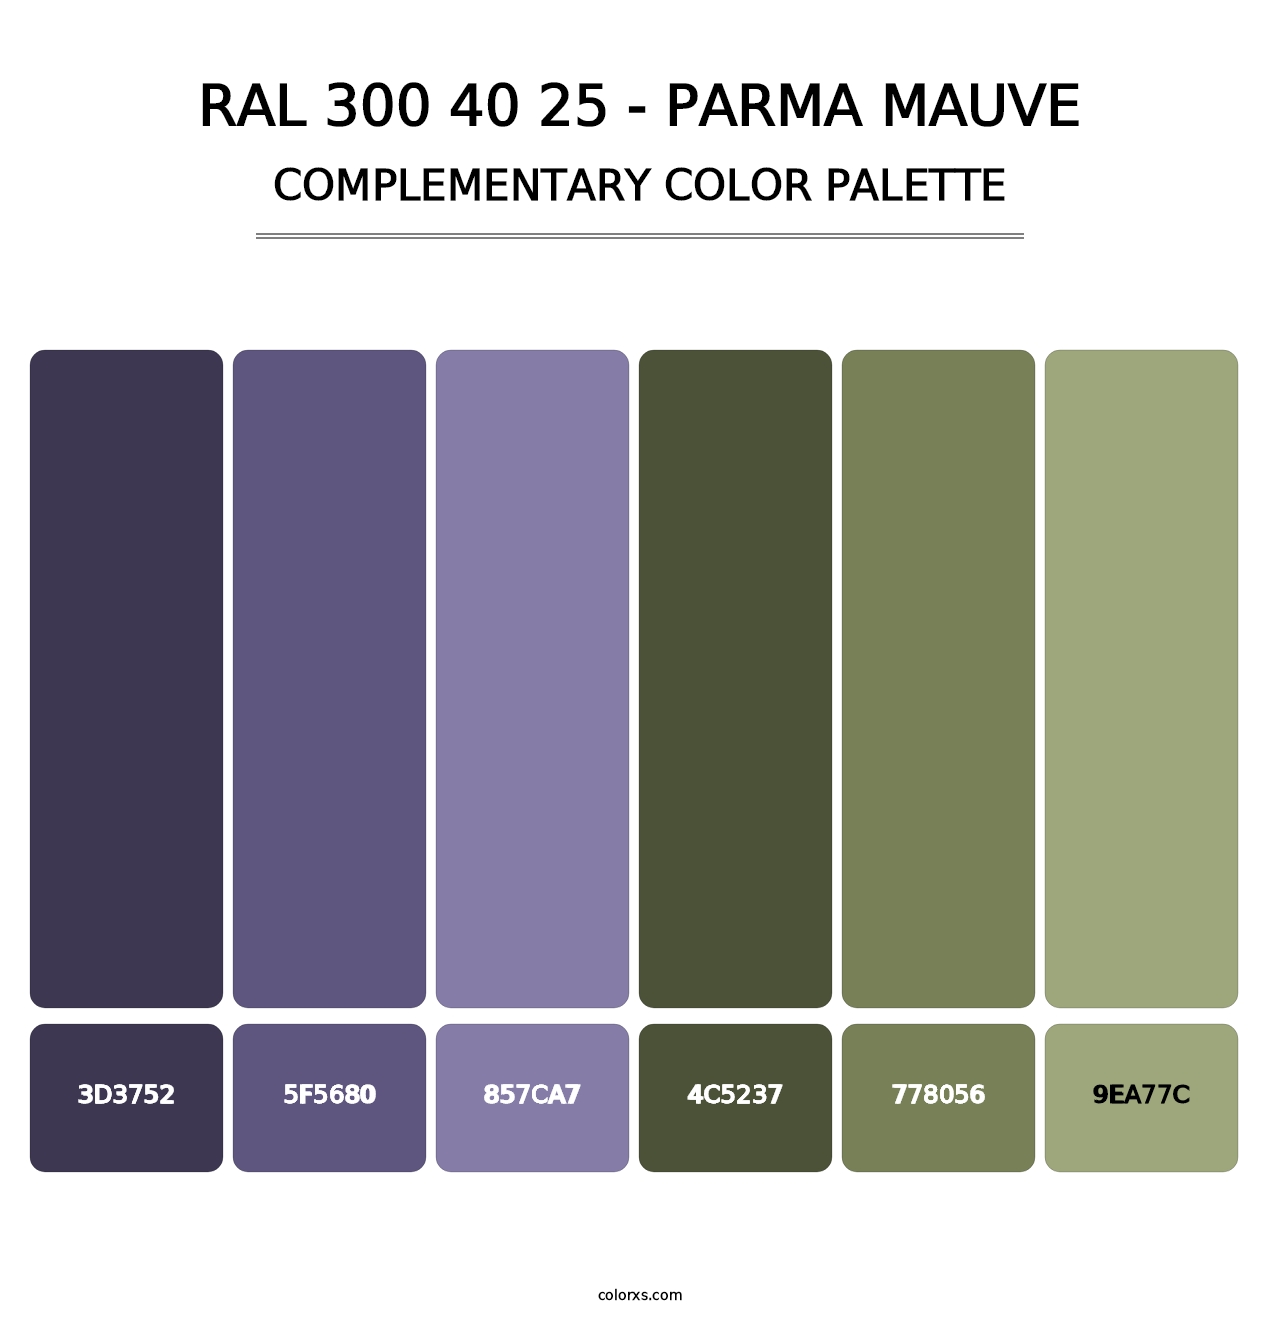 RAL 300 40 25 - Parma Mauve - Complementary Color Palette